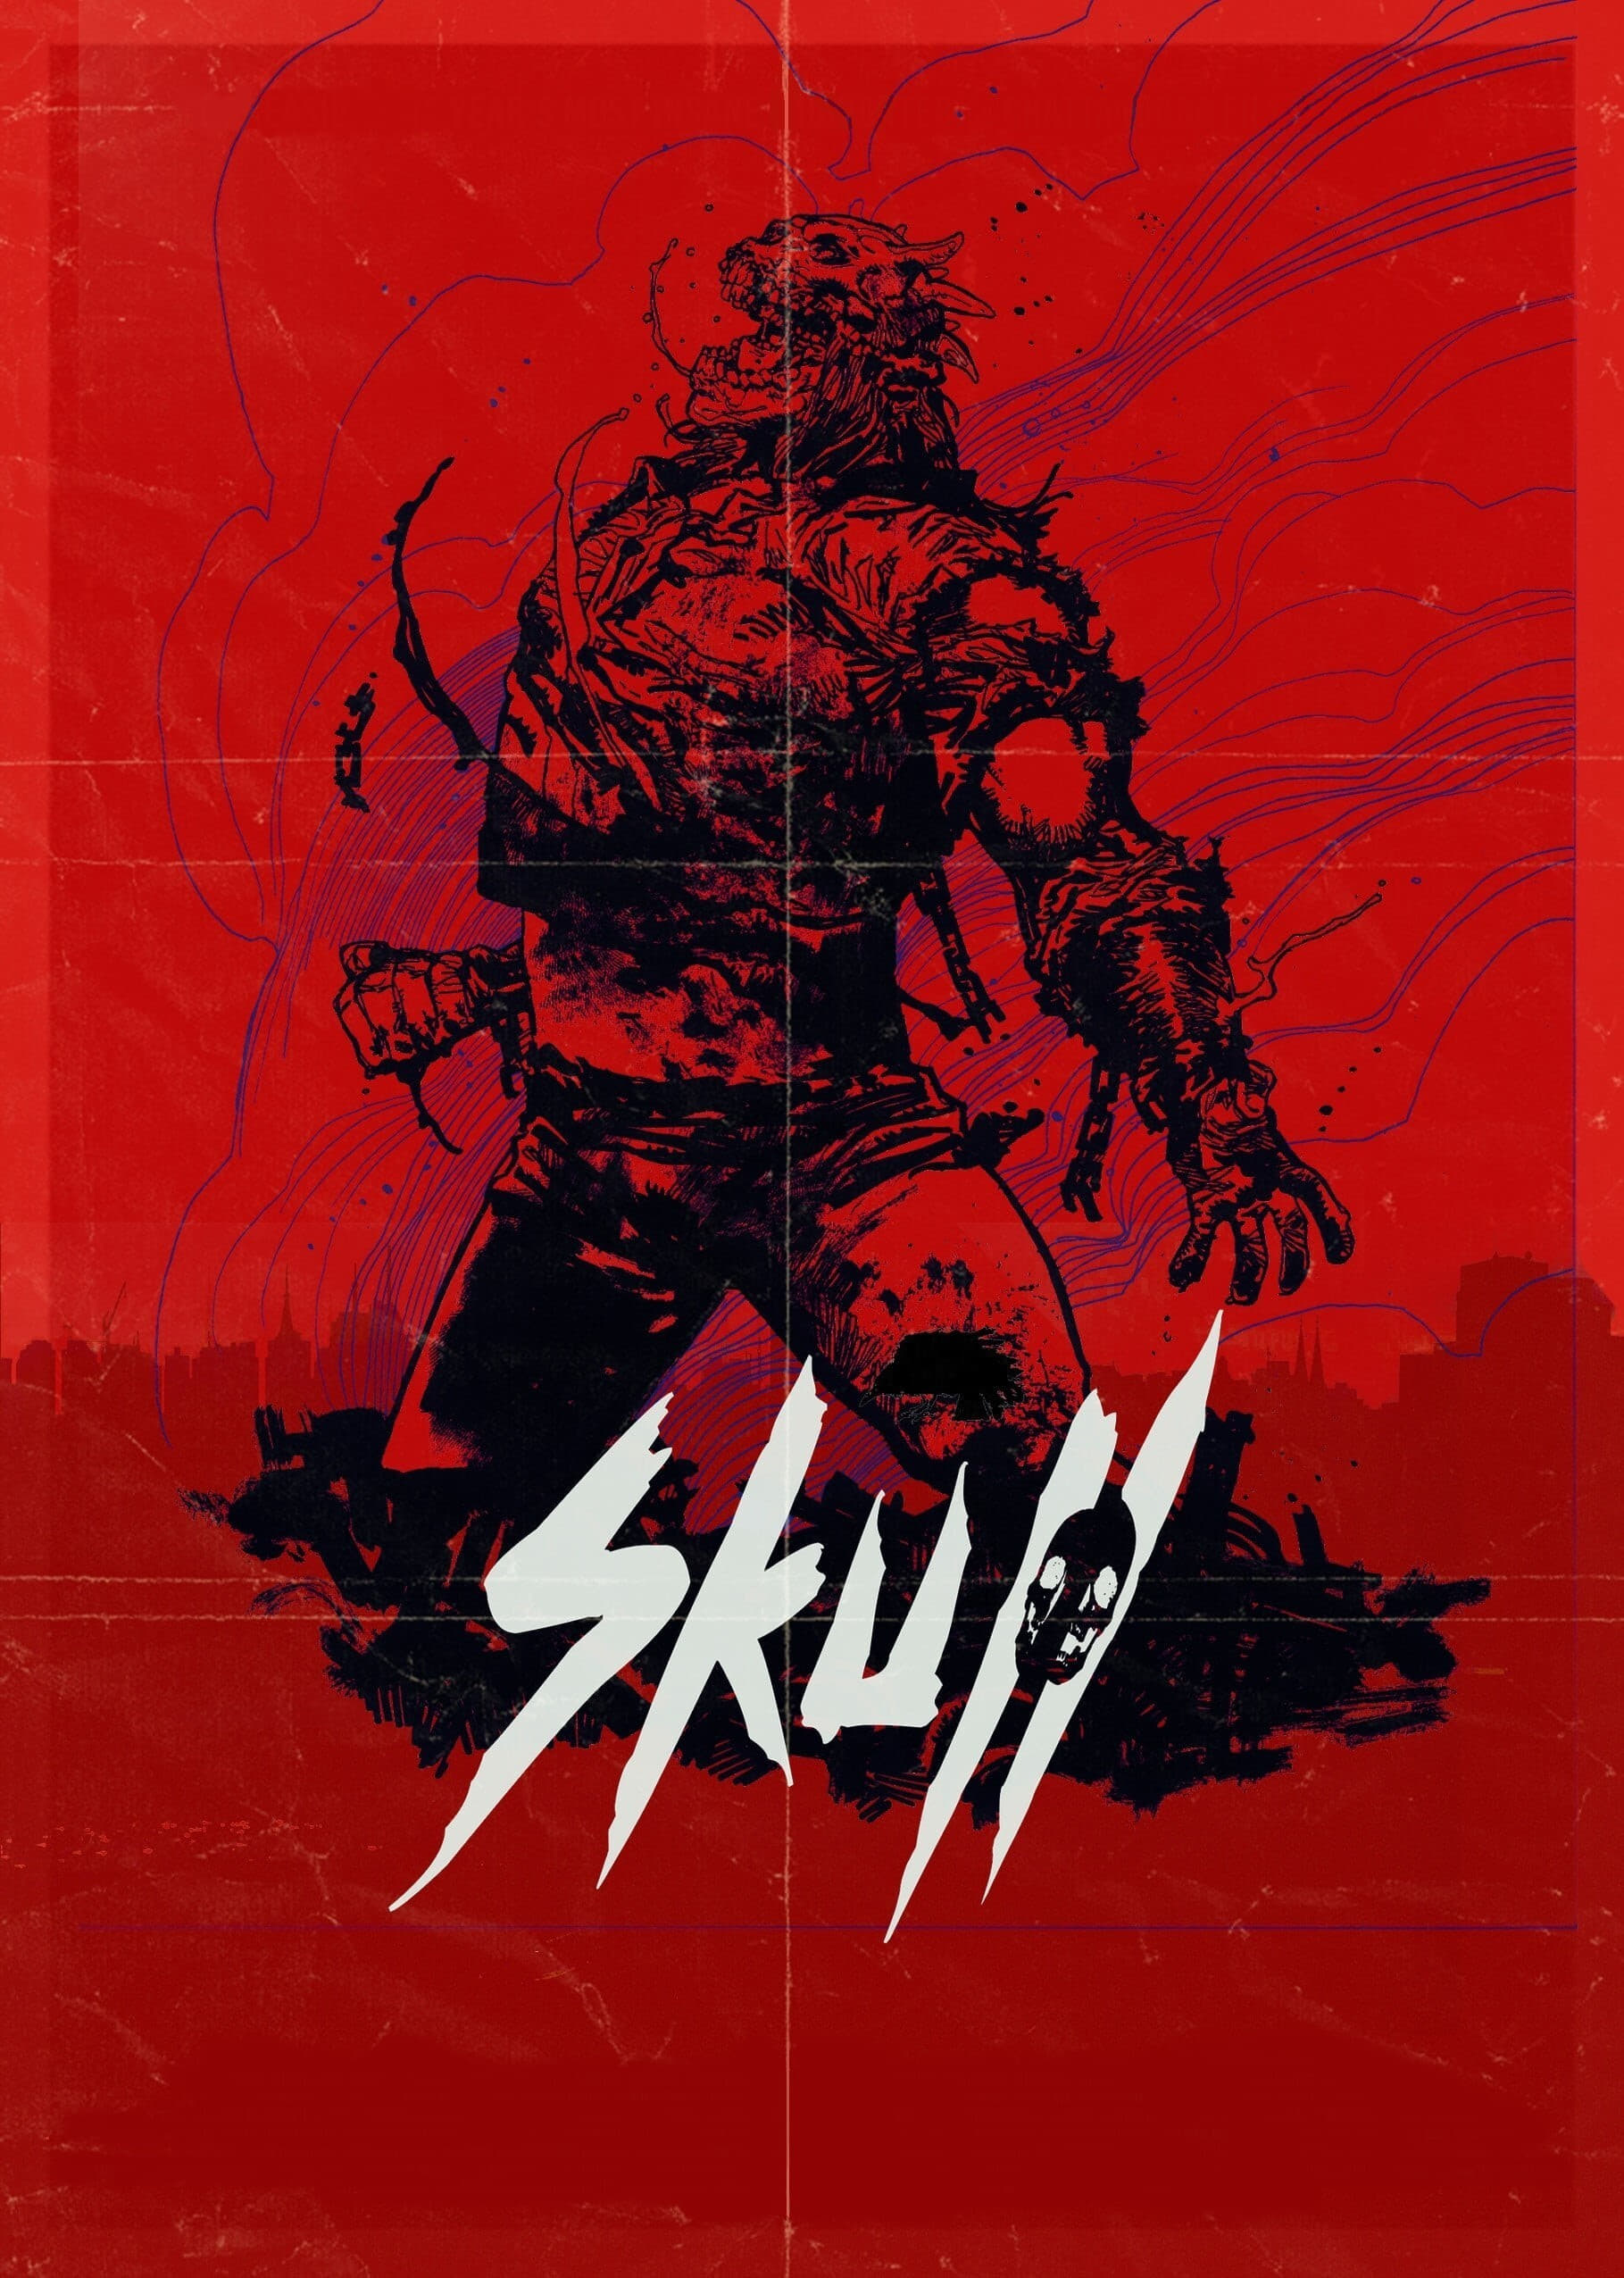 Skull: The Mask (2020)